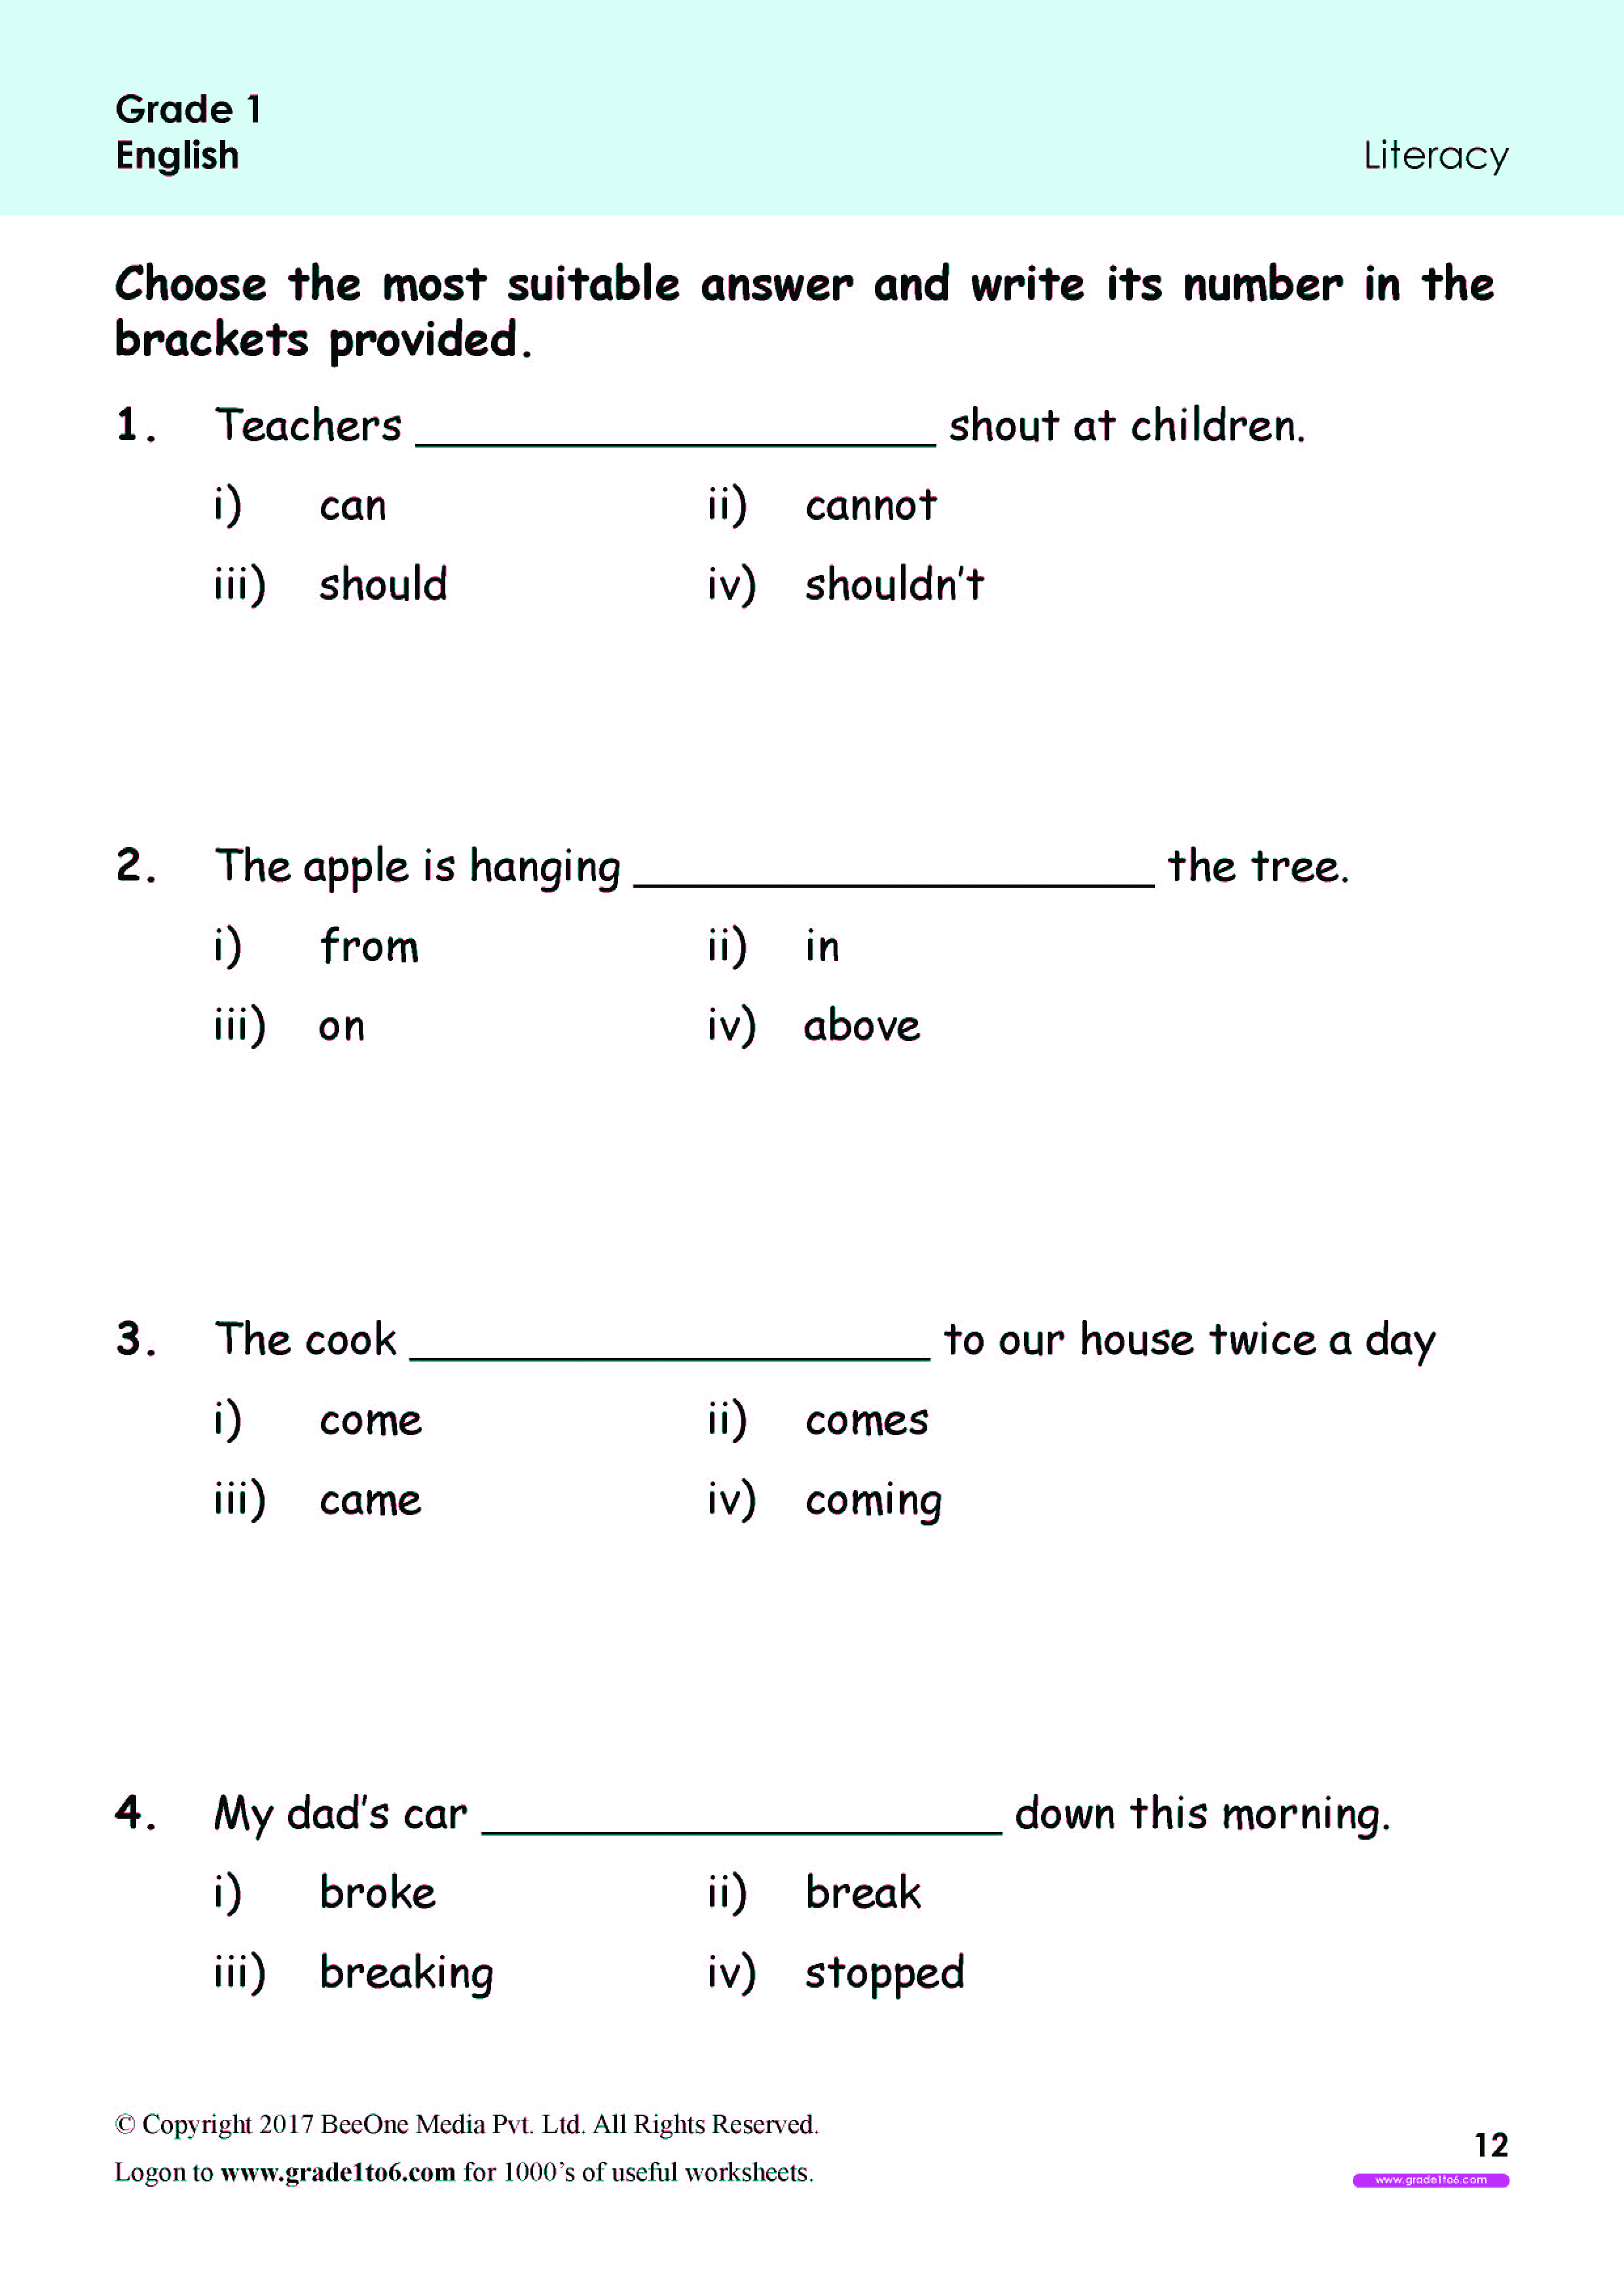 grade-1-english-worksheets-typical-grade-1-english-worksheets-grade-1-english-awesome-animals